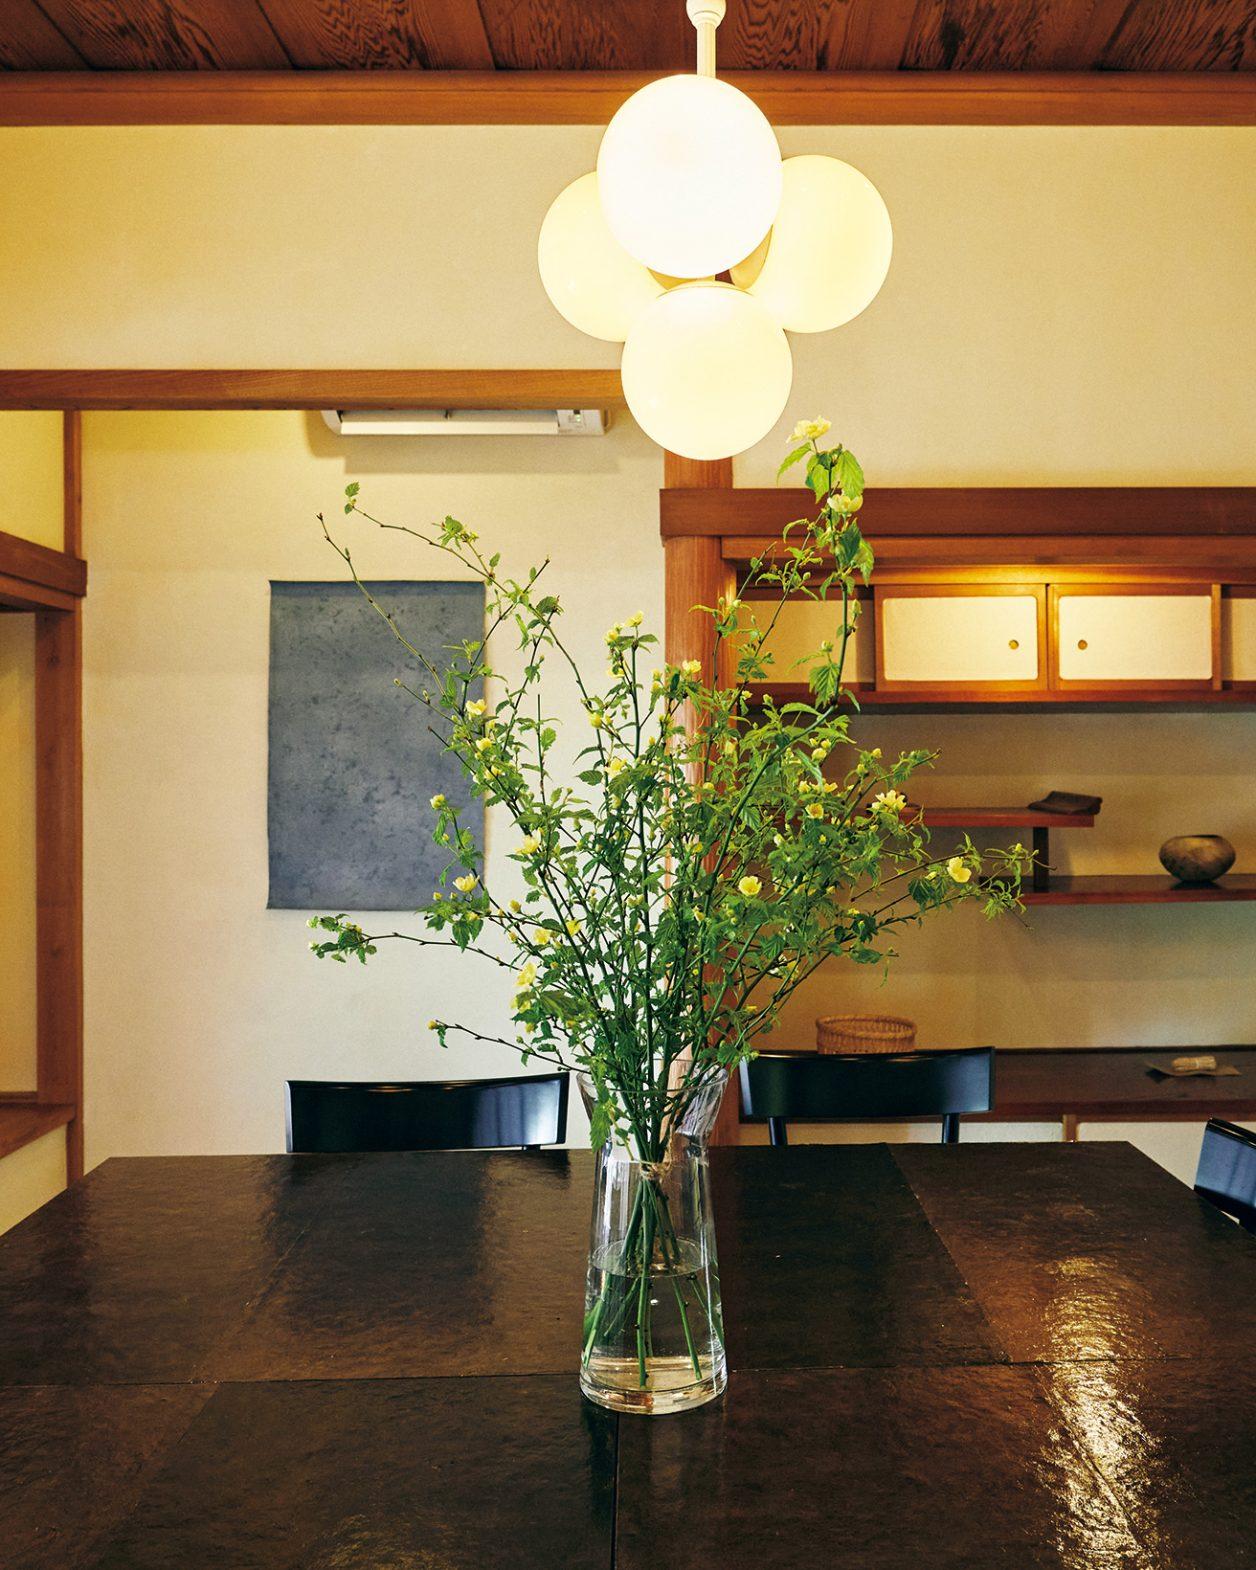 数寄屋建築の意匠が残る空間で、鎌倉のモダンフレンチを味わう。